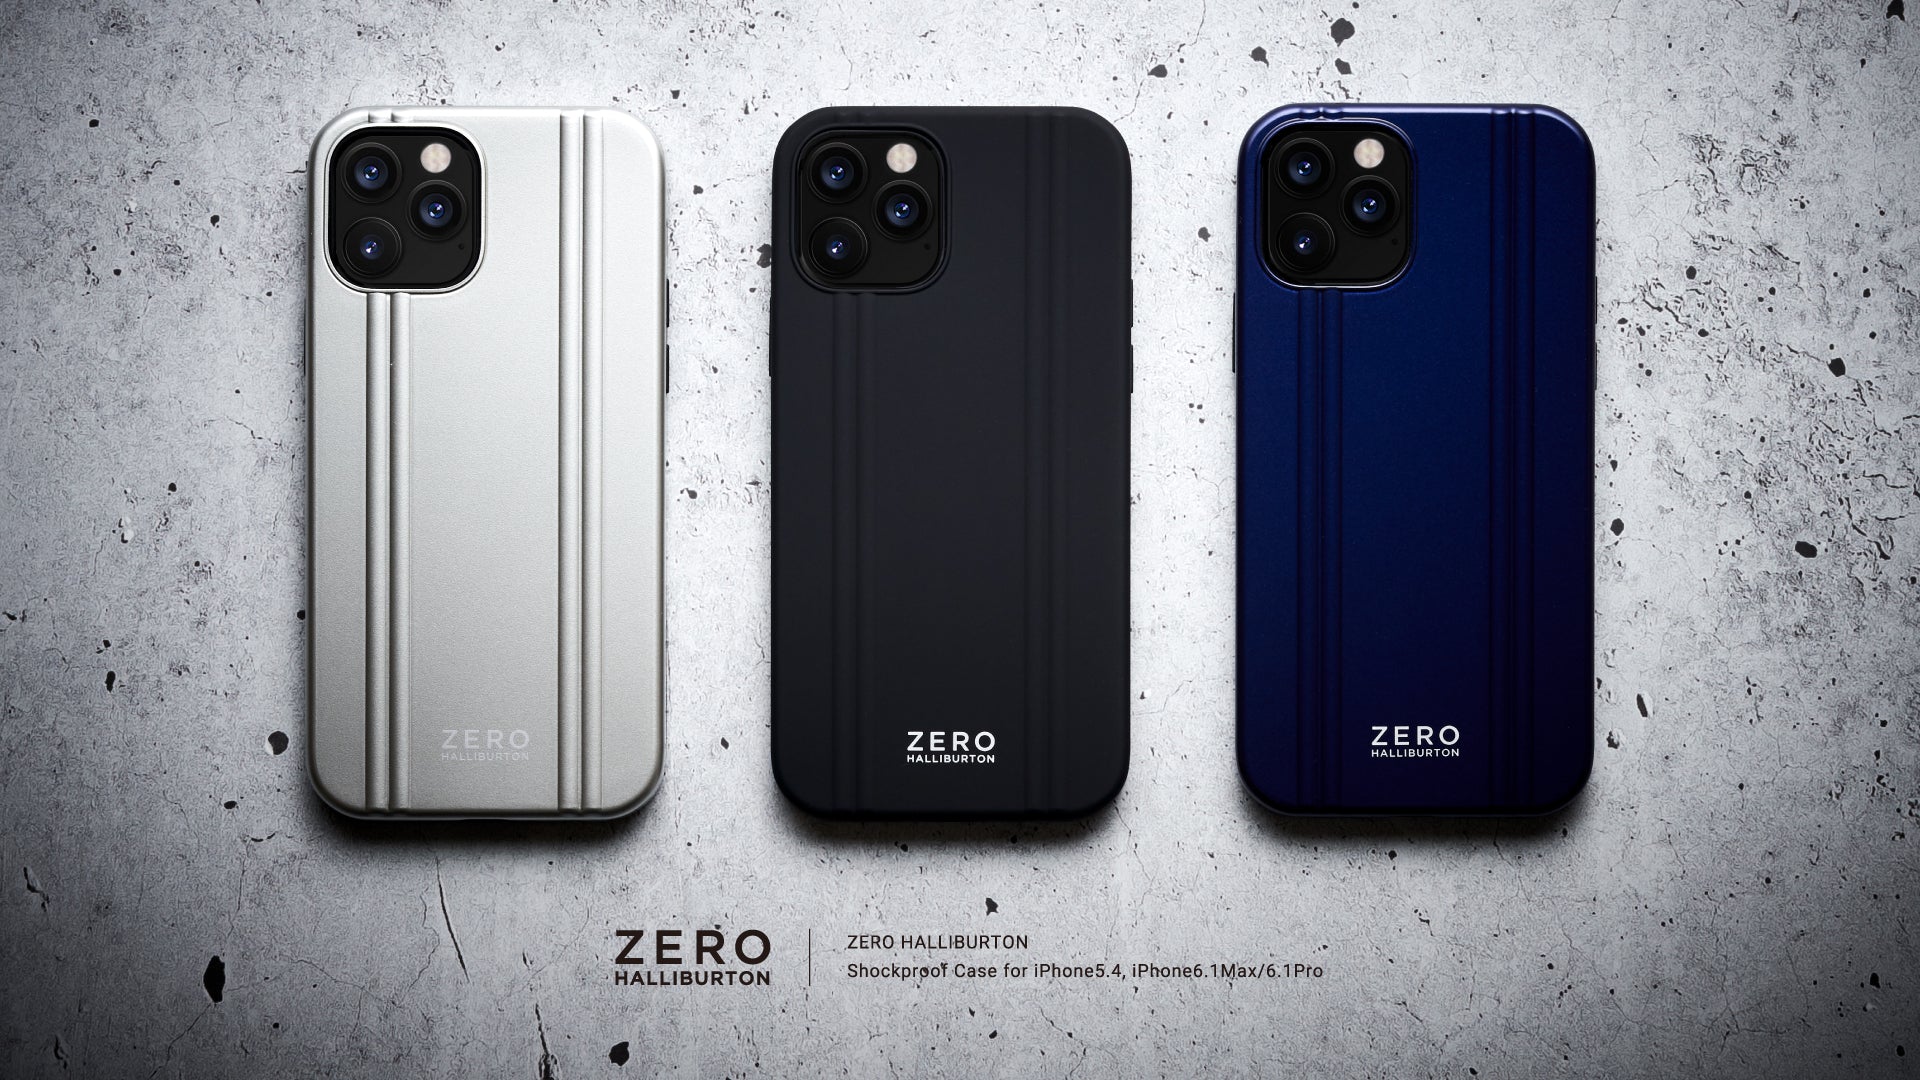 ZERO HALLIBURTONからiPhone 12 / iPhone 12 mini対応ケースが登場